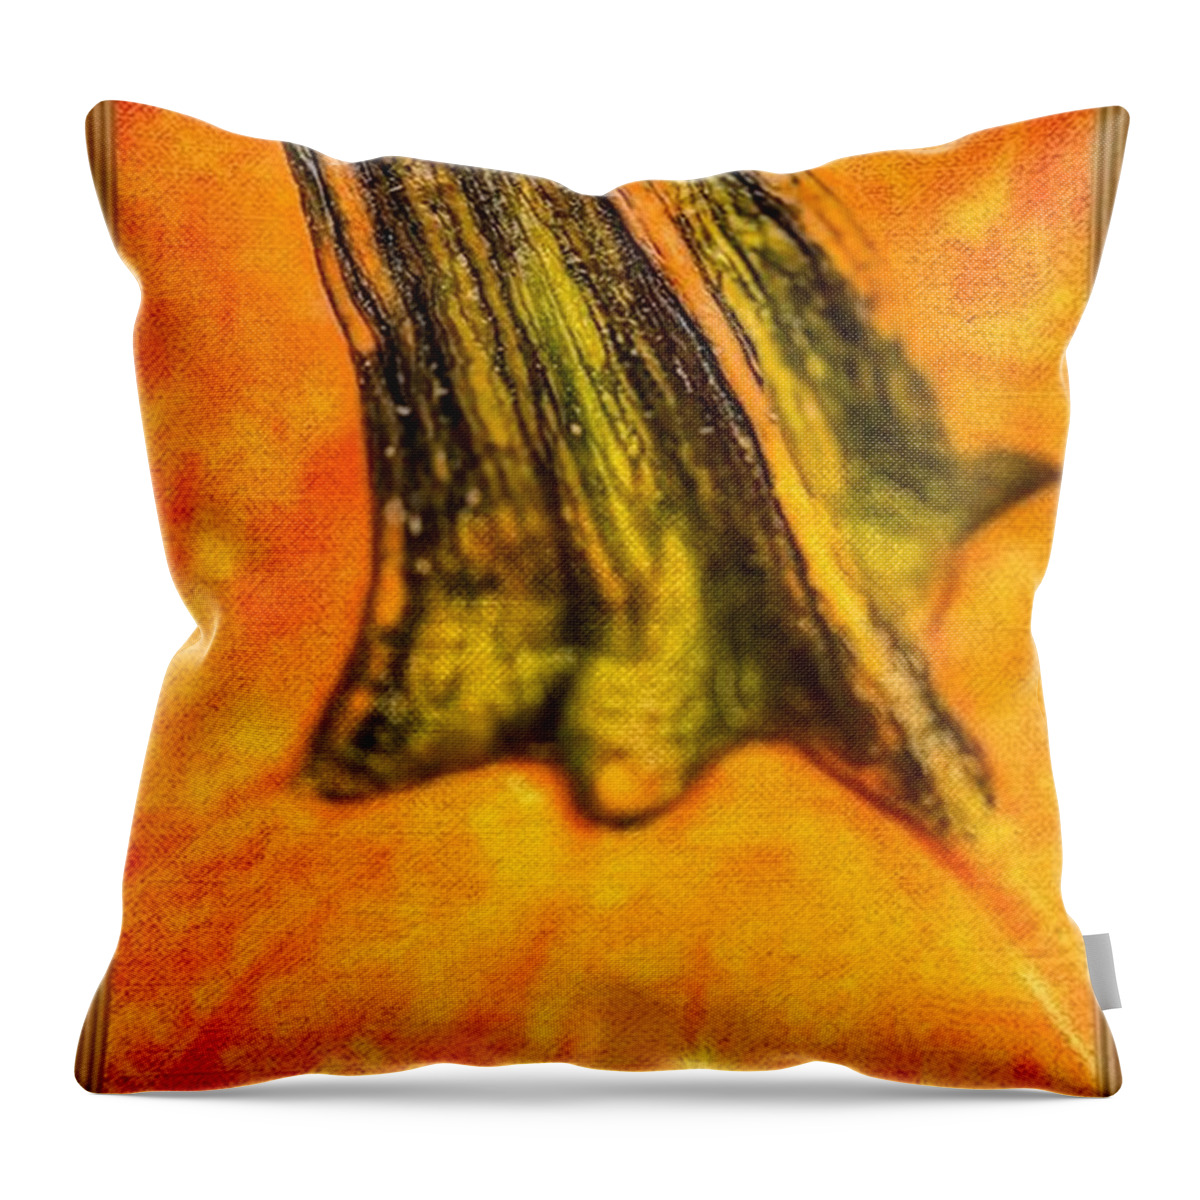 Pumpkin Throw Pillow featuring the painting Pumpkin Stalk by Juliette Becker